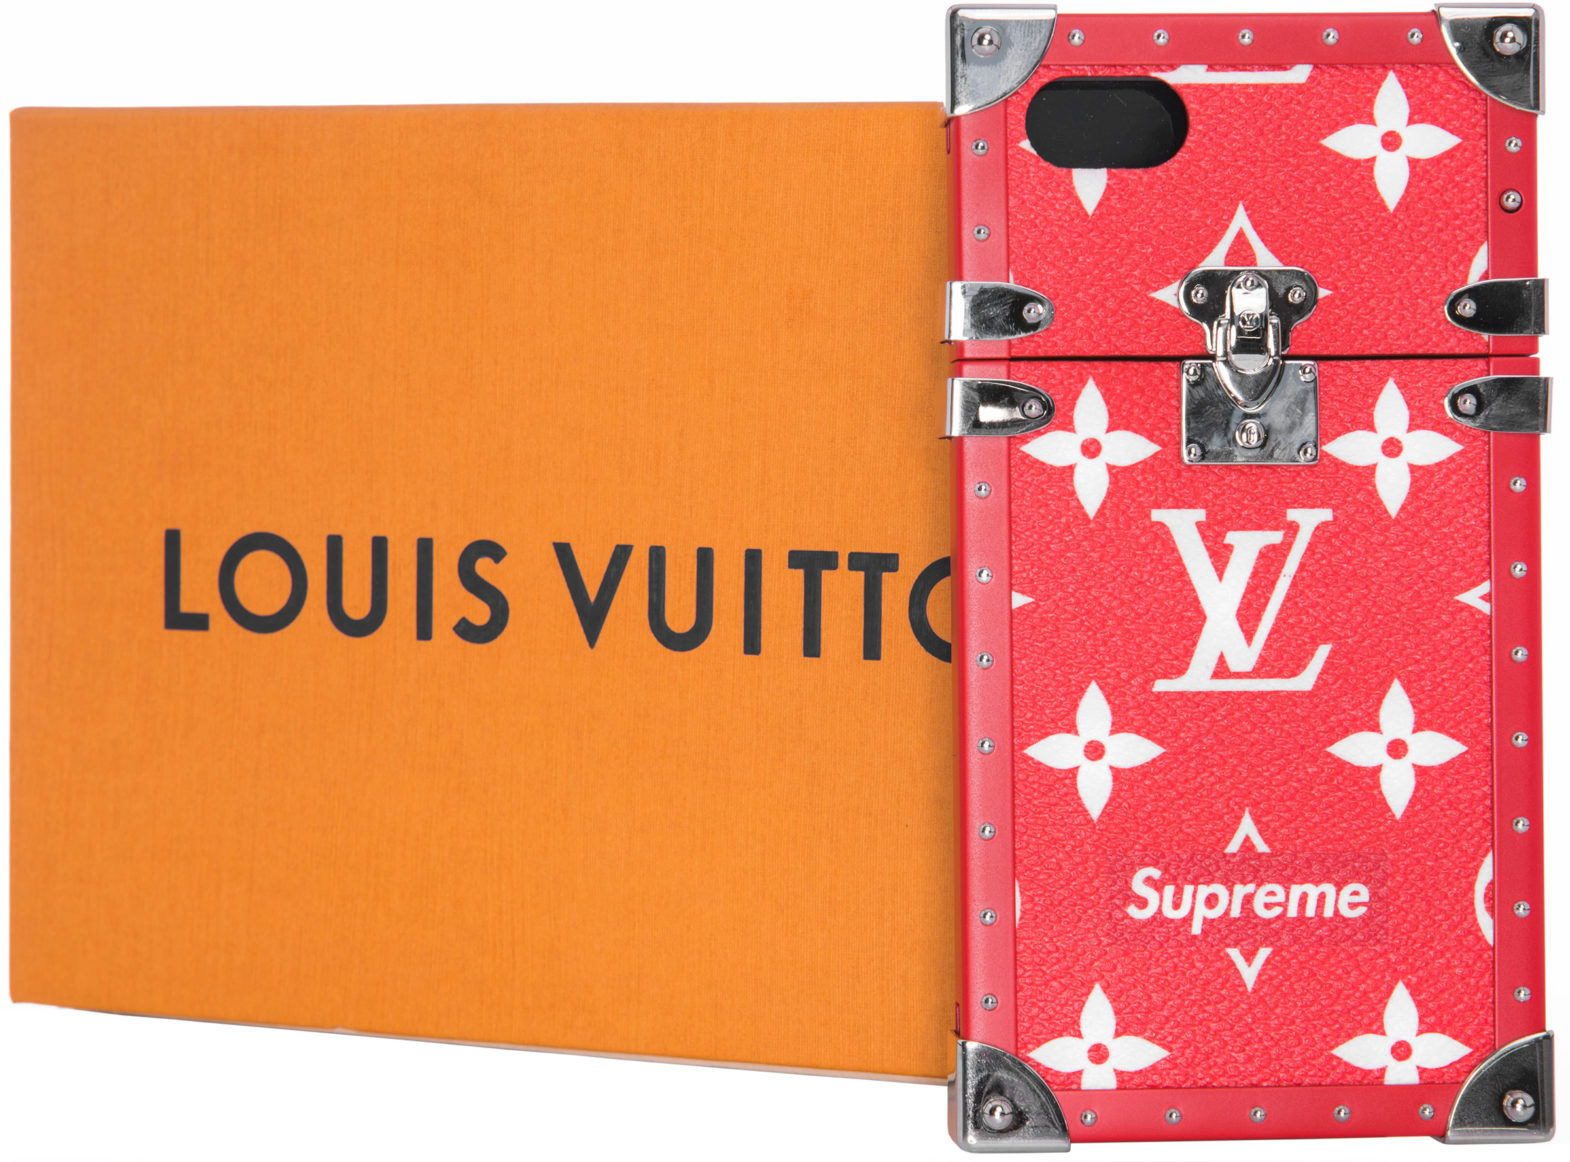 Louis Vuitton Supreme Case on Sale, SAVE 37% 